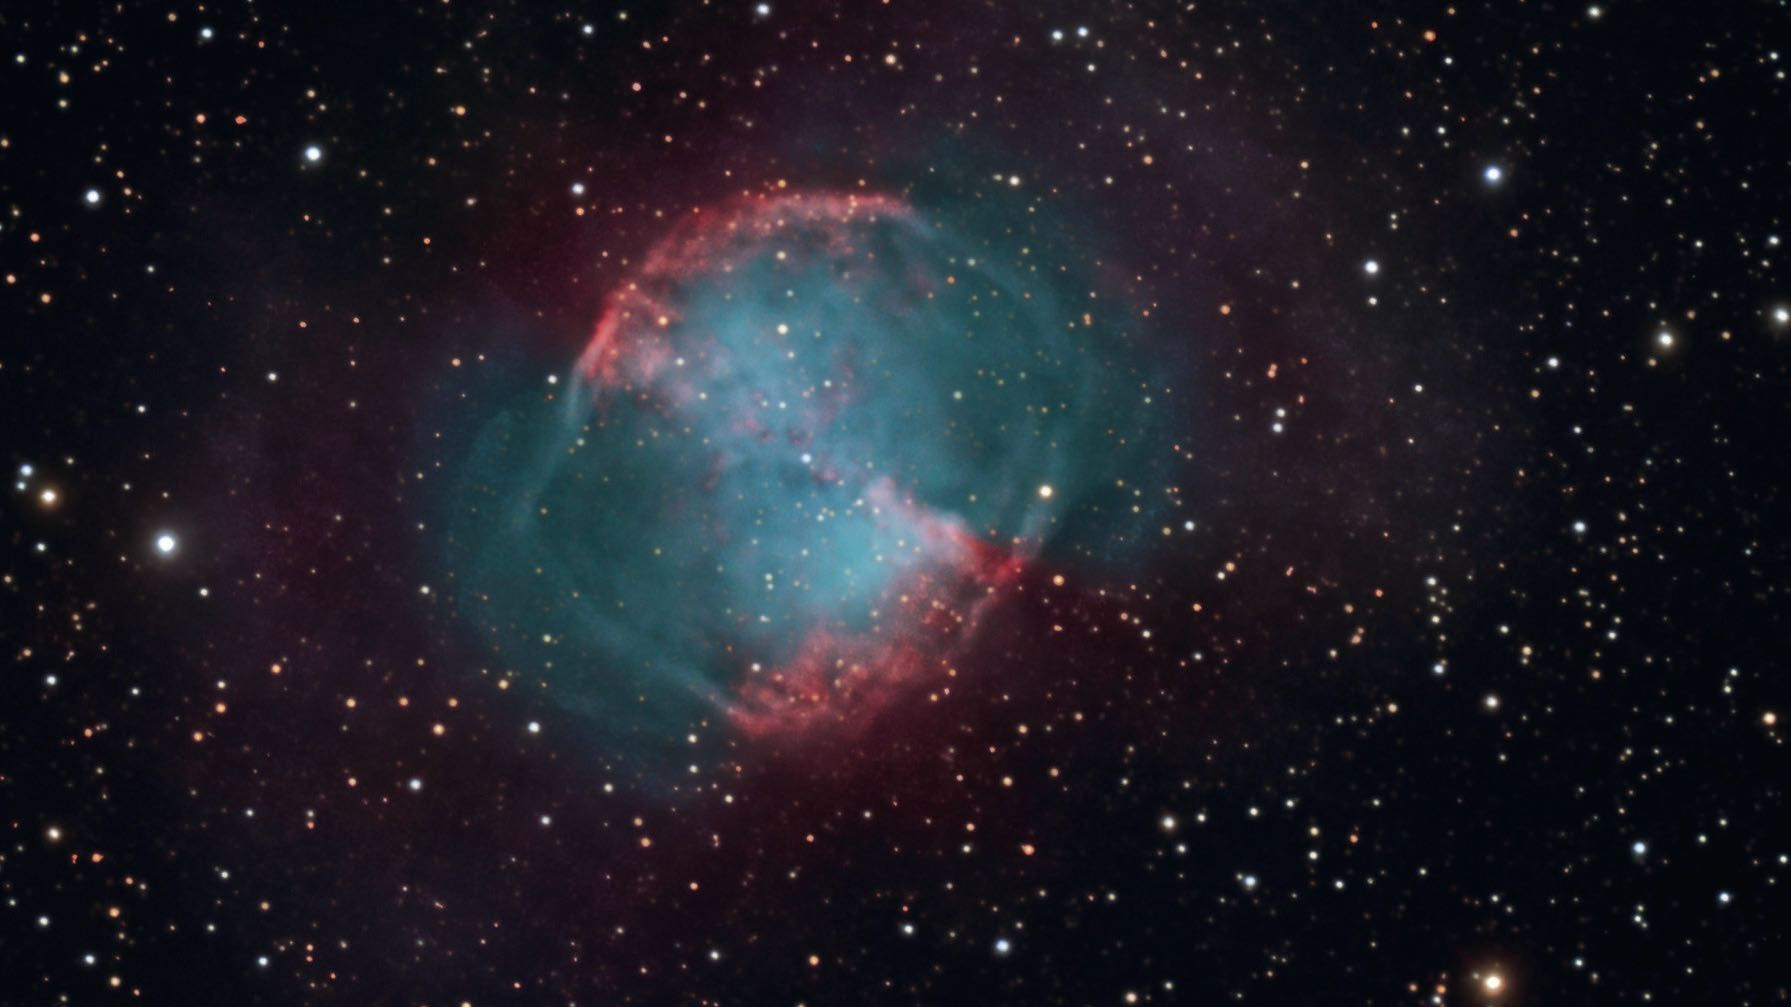 Der planetarische Nebel M 27 kann auch für Stadtbeobachter ein lohnendes Objekt sein. Wer einen Filter verwendet, kann sogar den Hantel-Effekt erleben. Sebastian Voltmer / CCD Guide